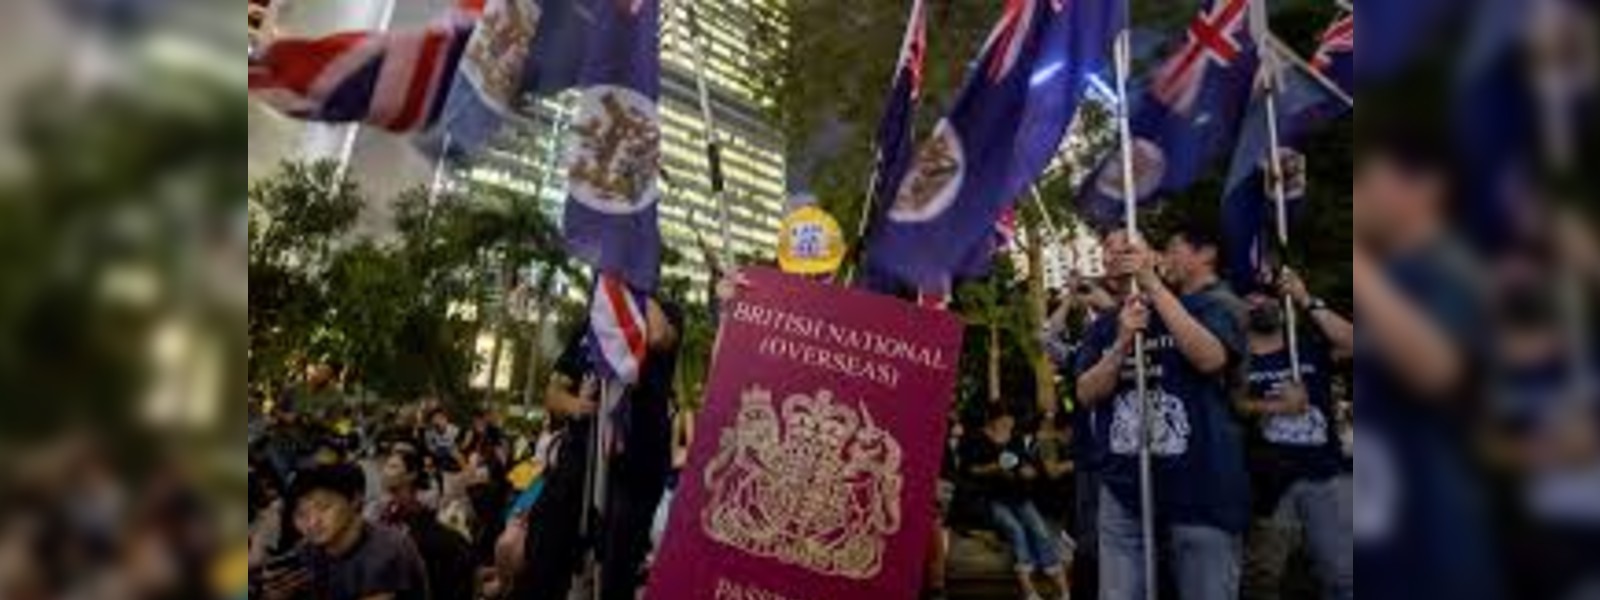 UK offers citizenship to British passport holders 